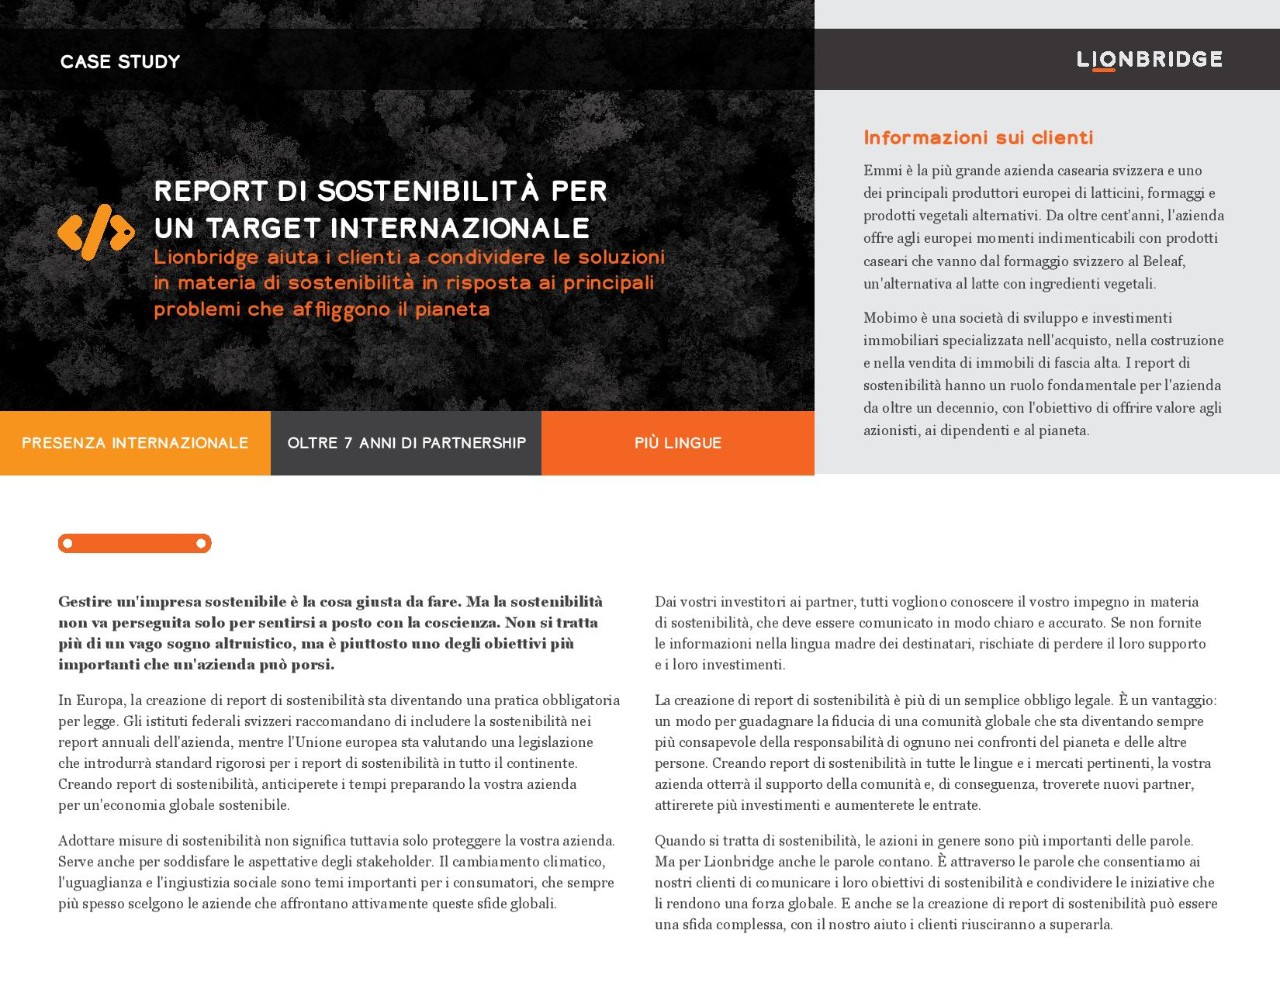 Lionbridge aiuta i clienti a creare report sulla sostenibilità per un pubblico internazionale